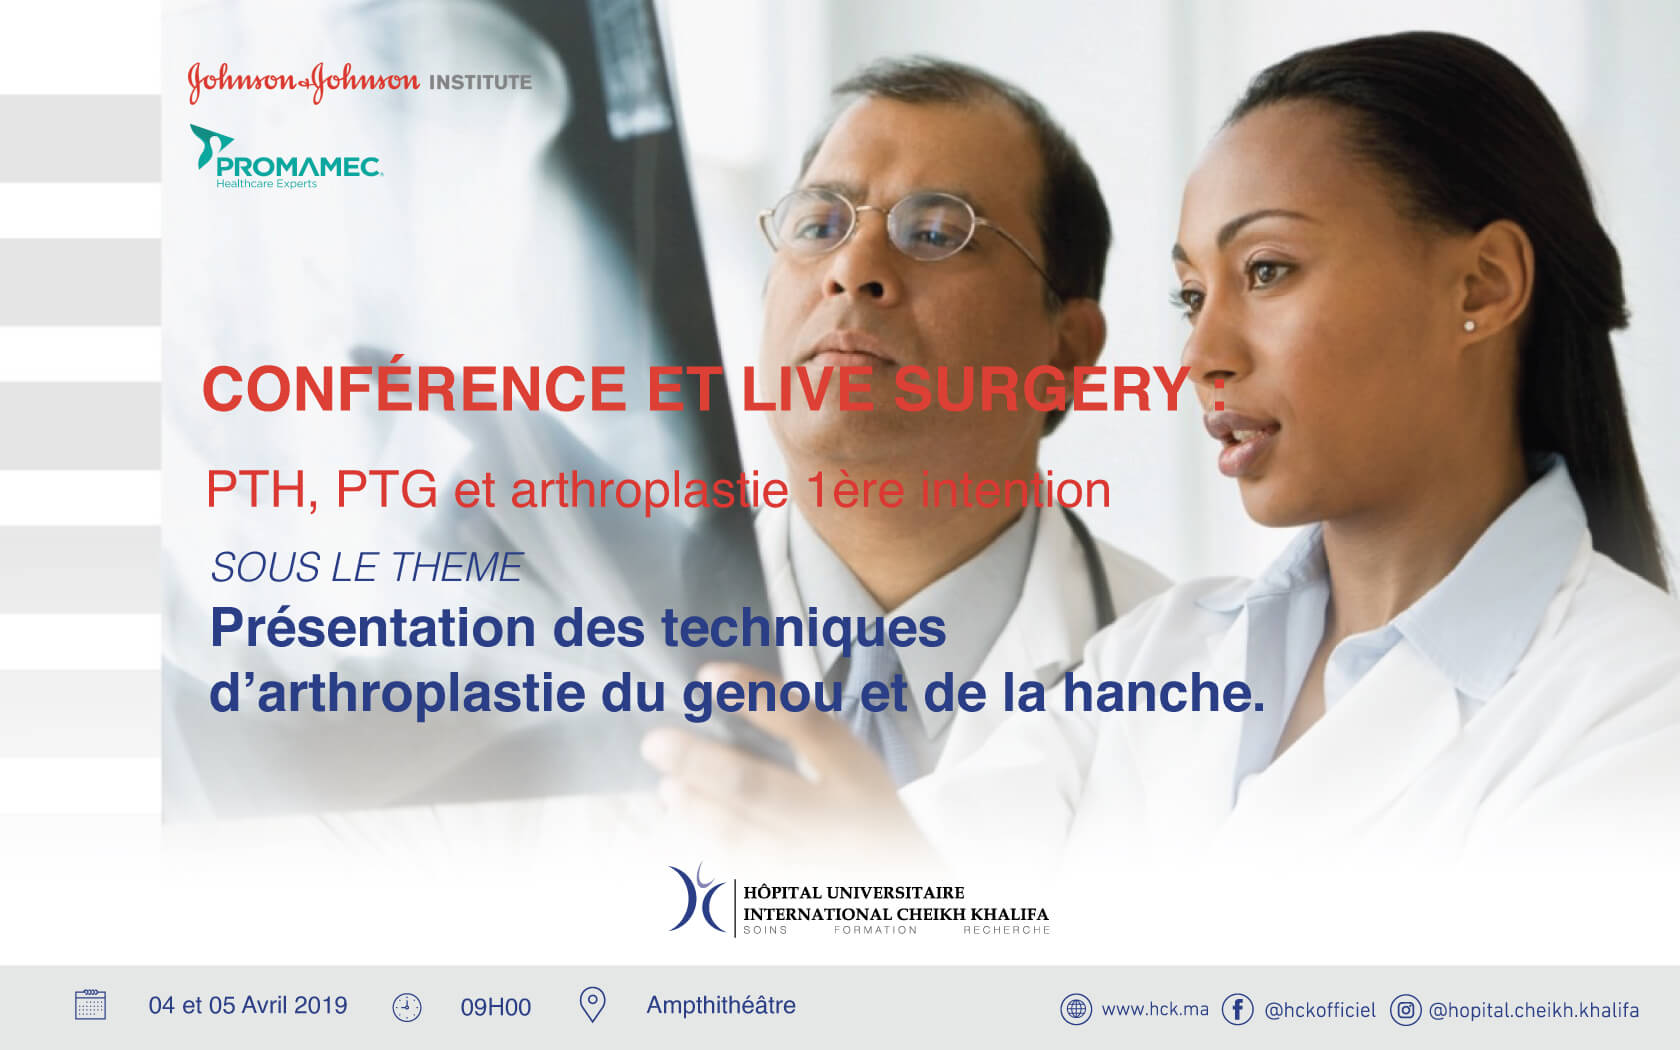 Conférence & Live Surgery  PTH, PTG, Arthroplastie 1ère intention - Présentation des techniques d’arthroplastie du genou et de la hanche